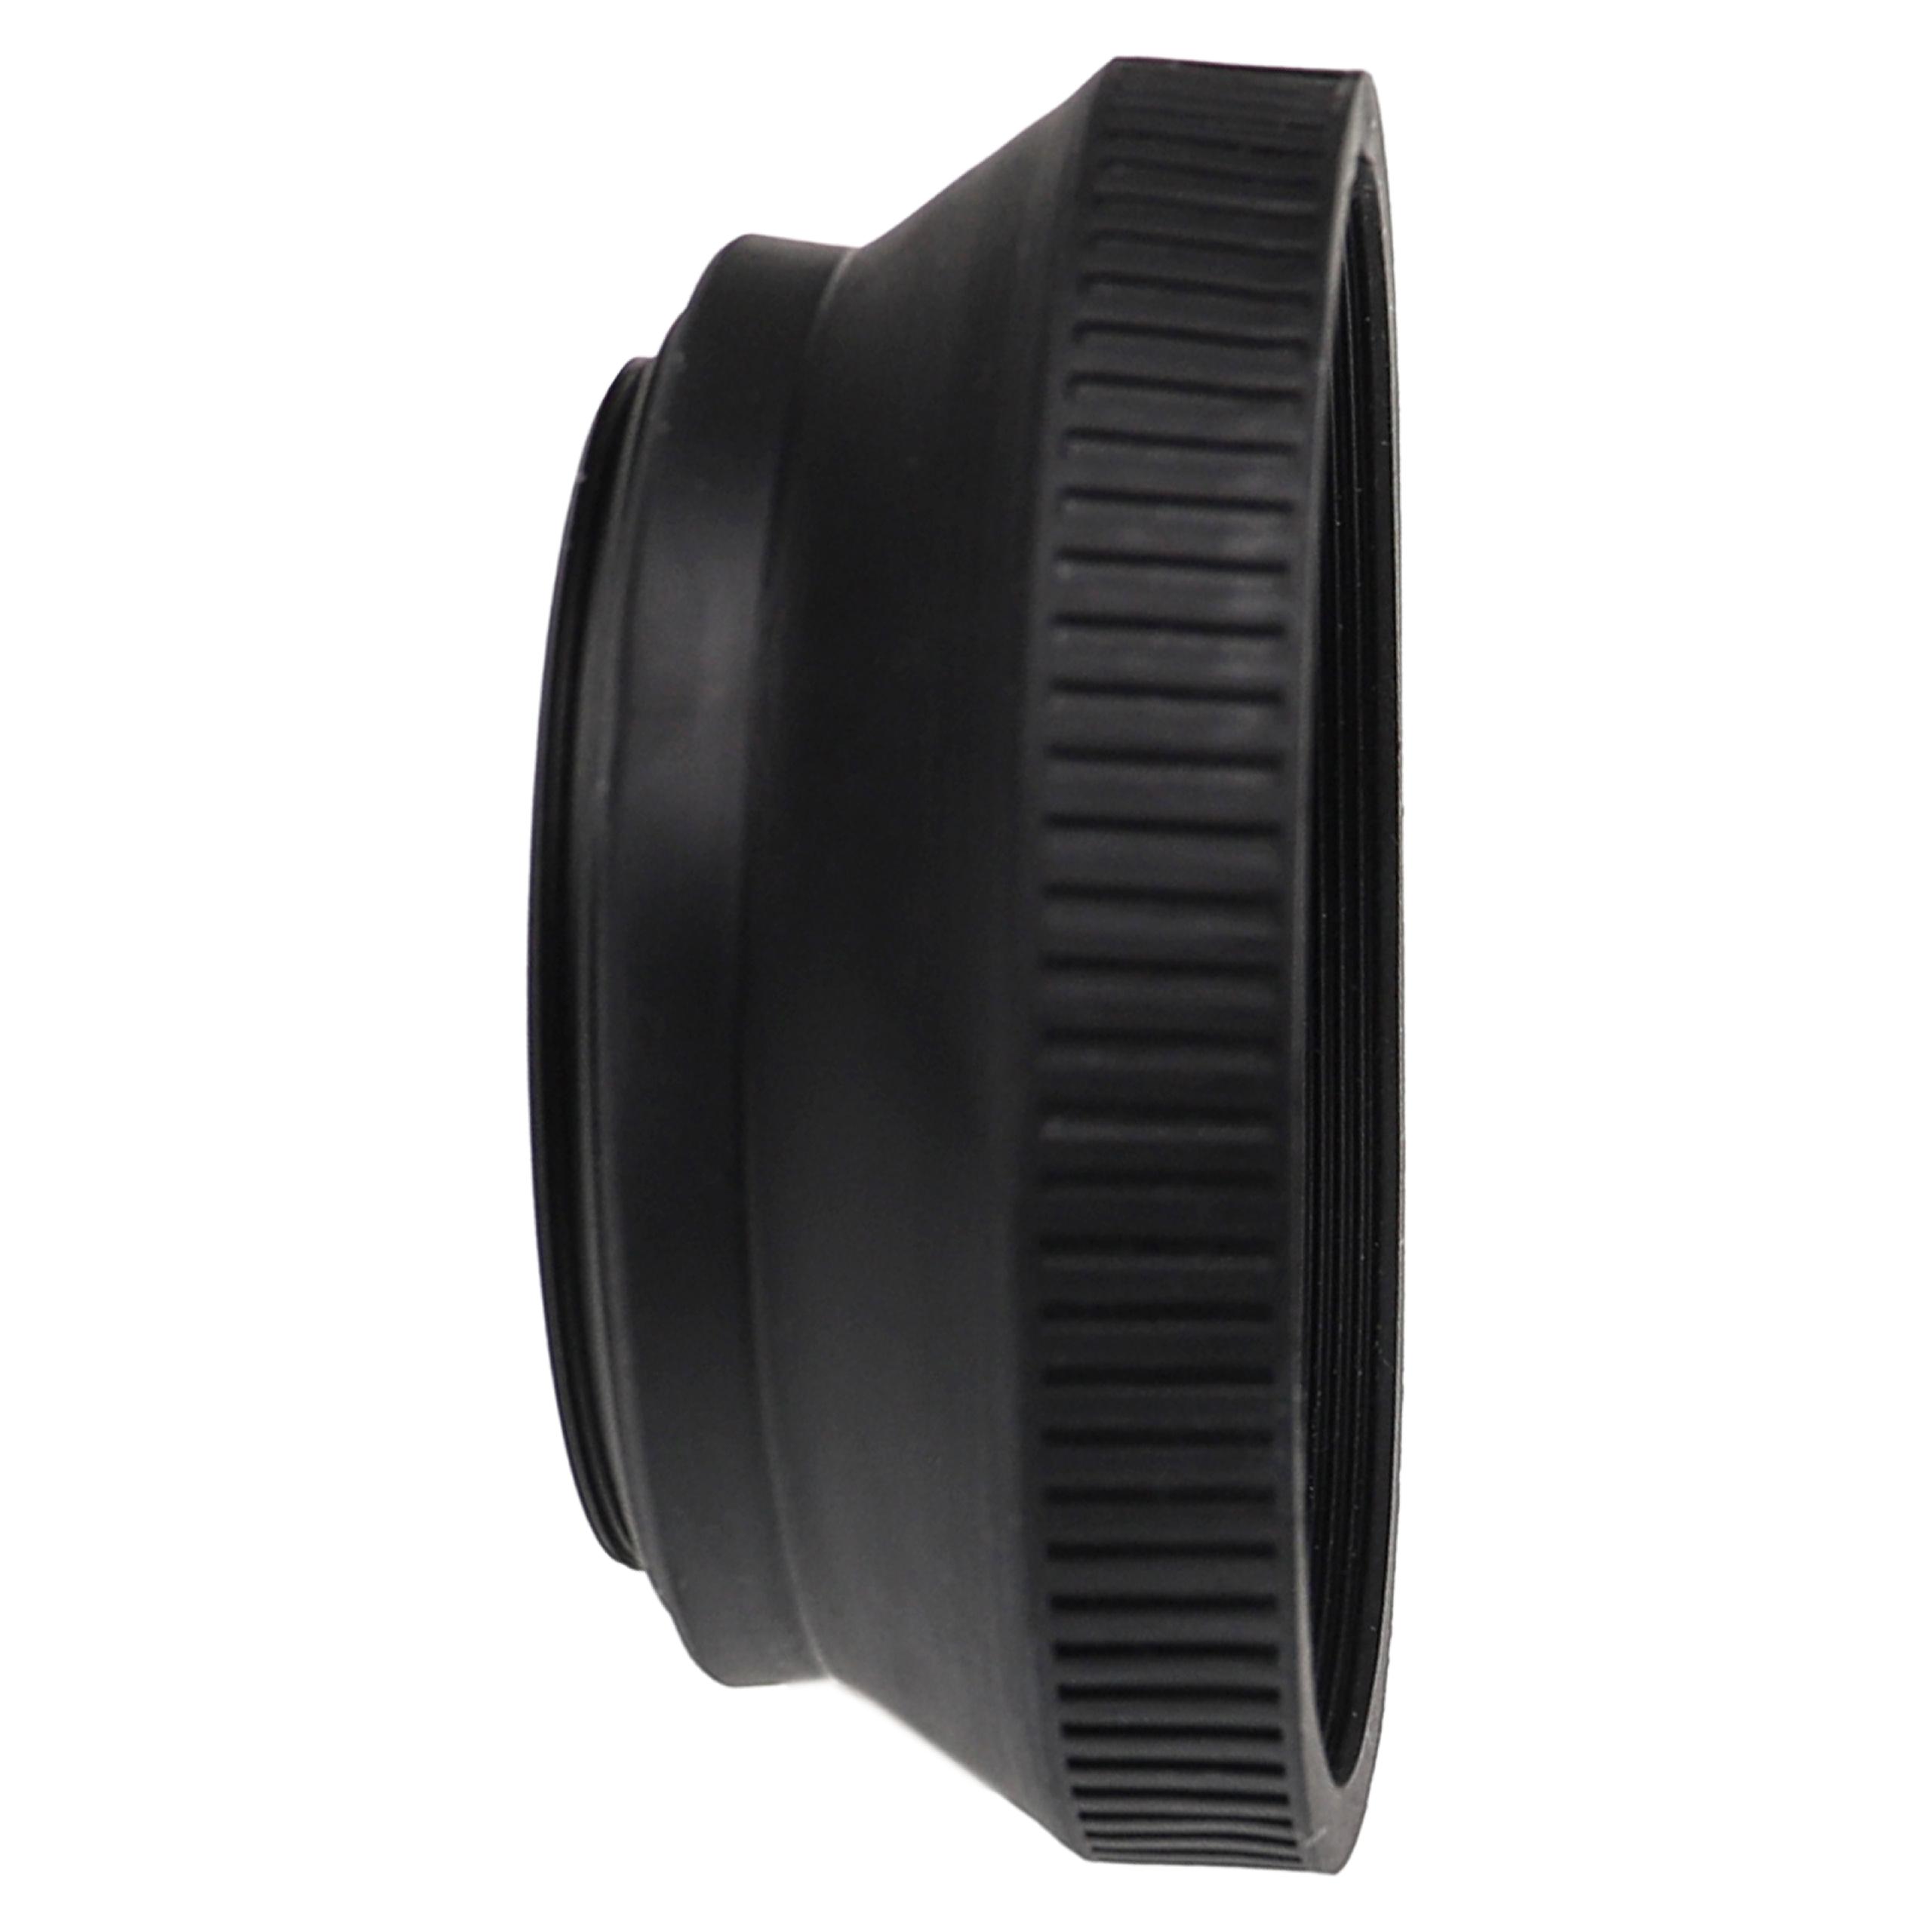 Lens Hood for Leica, Panasonic, lenses Lenses with 46 mm Diameter 